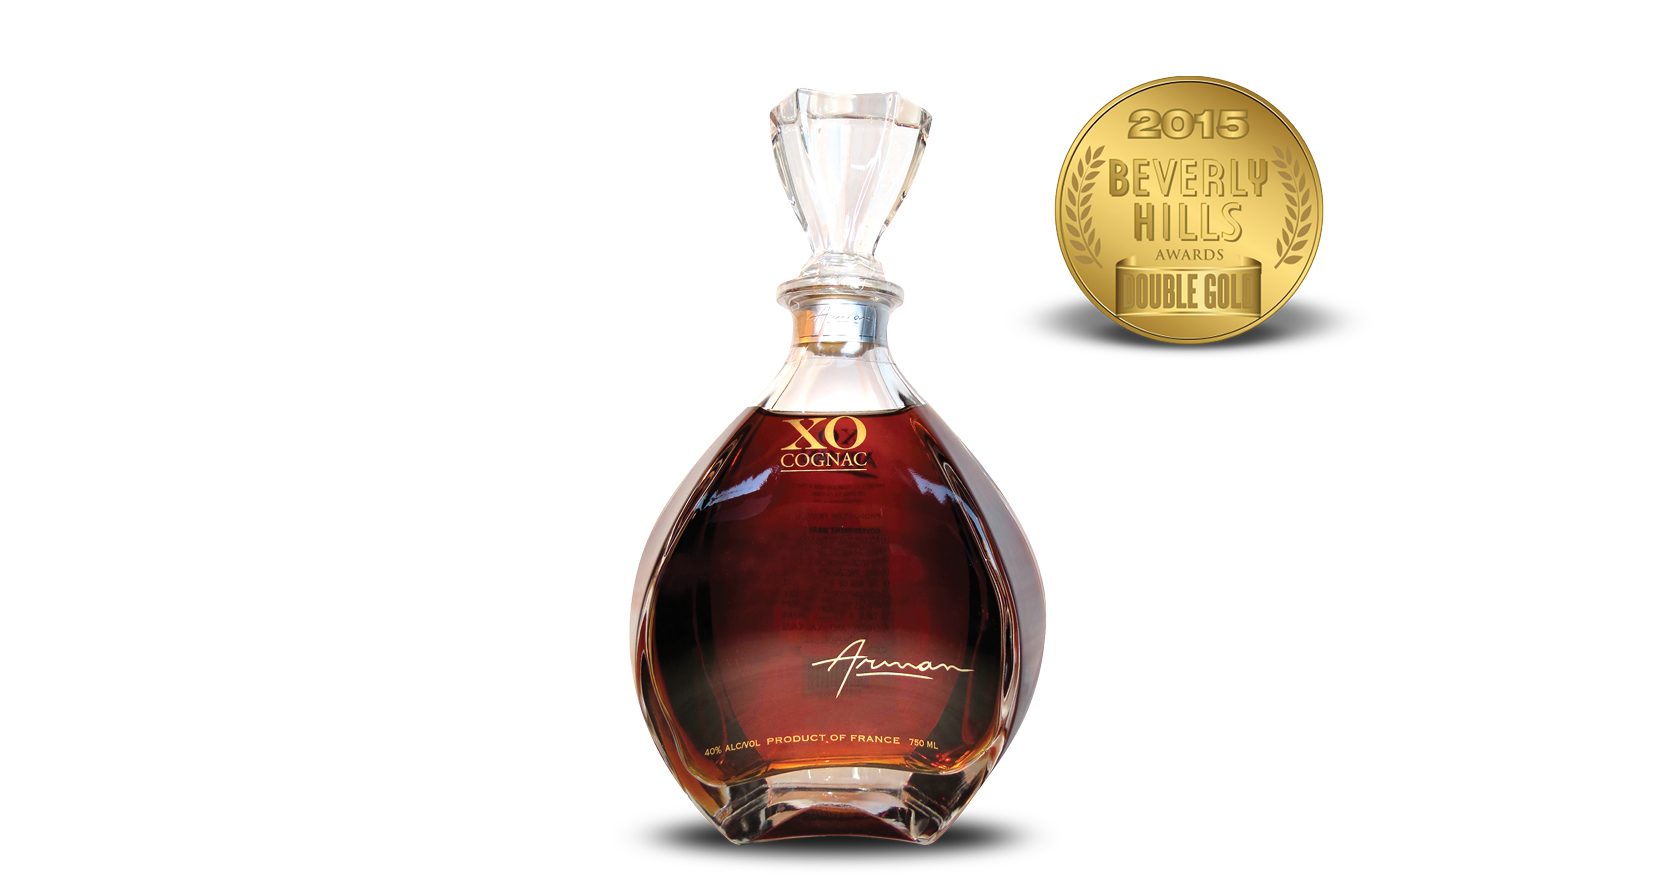 Arman XO Cognac